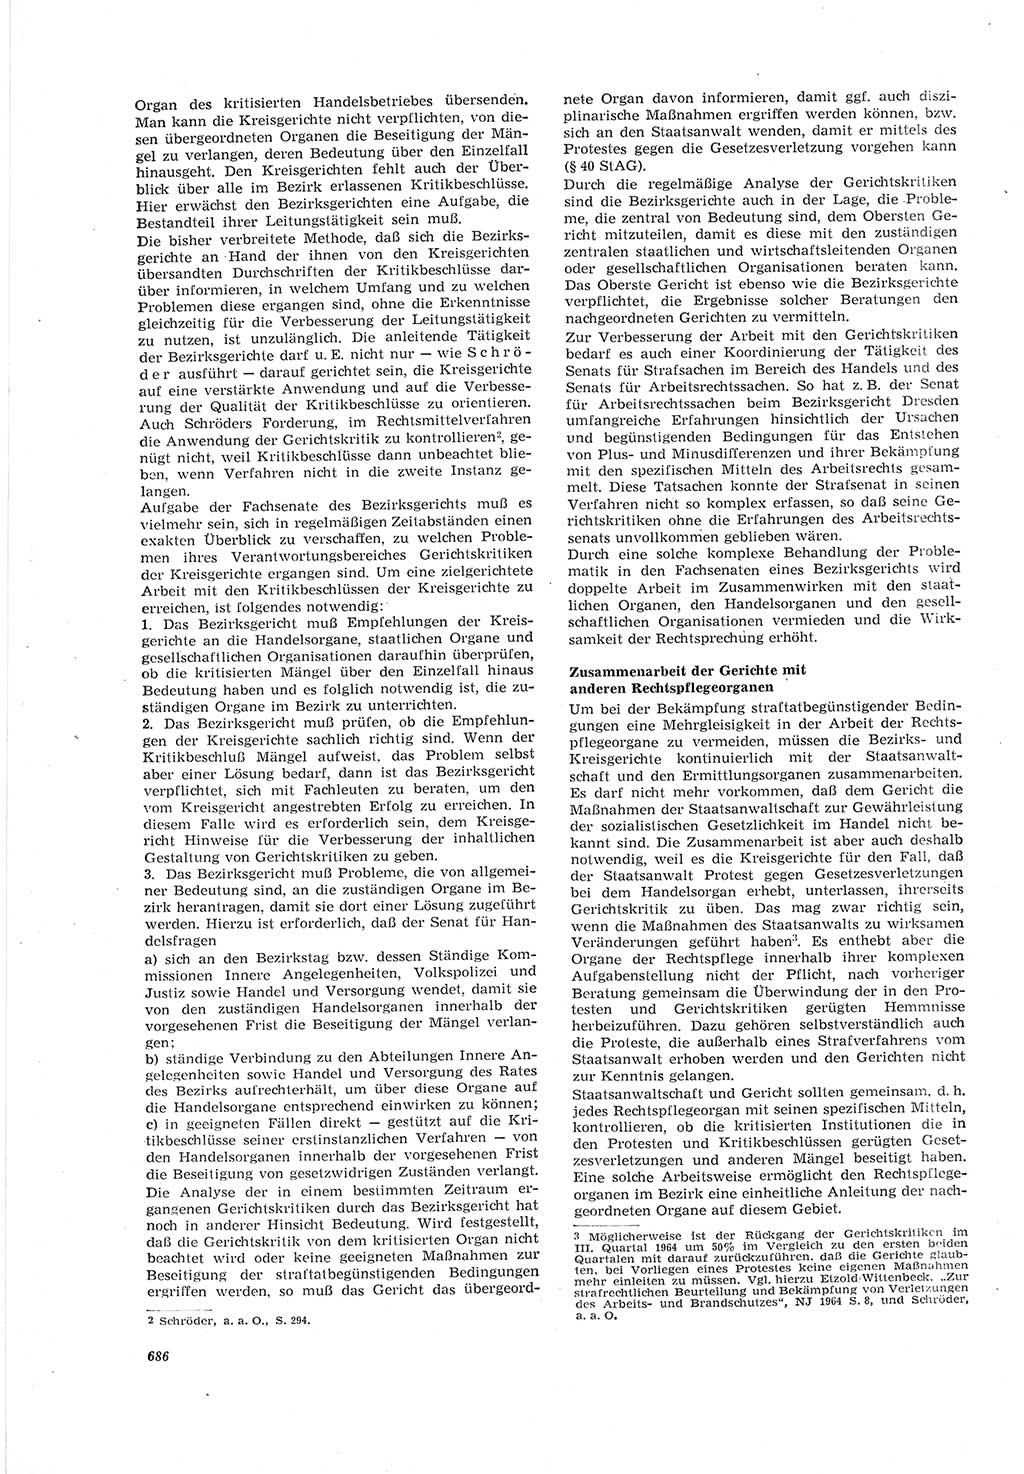 Neue Justiz (NJ), Zeitschrift für Recht und Rechtswissenschaft [Deutsche Demokratische Republik (DDR)], 18. Jahrgang 1964, Seite 686 (NJ DDR 1964, S. 686)